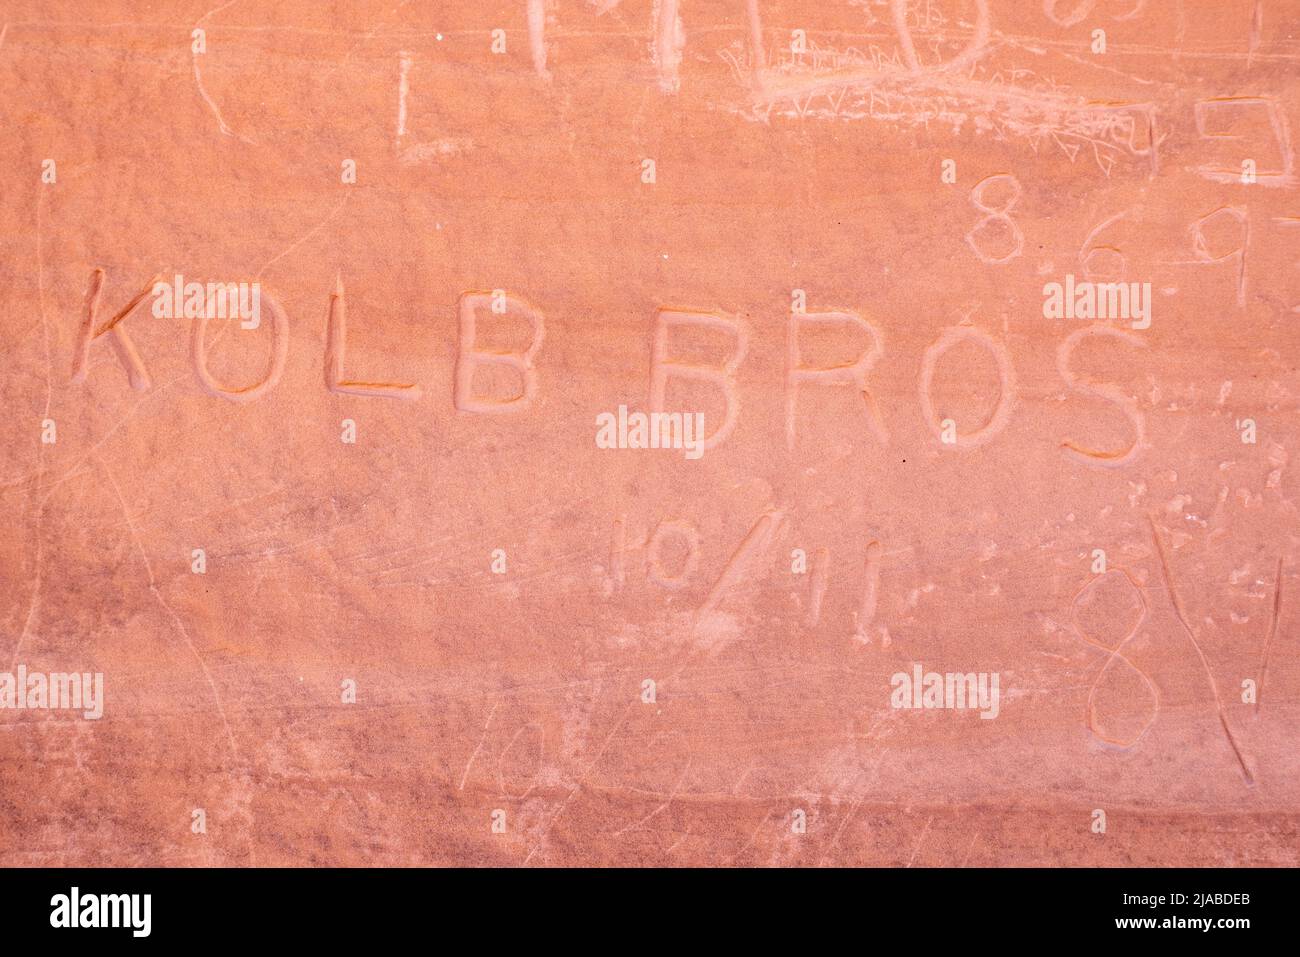 Historic Kolb Bros inscription at Bowknot Bend in Labyrinth Canyon, Utah. Stock Photo